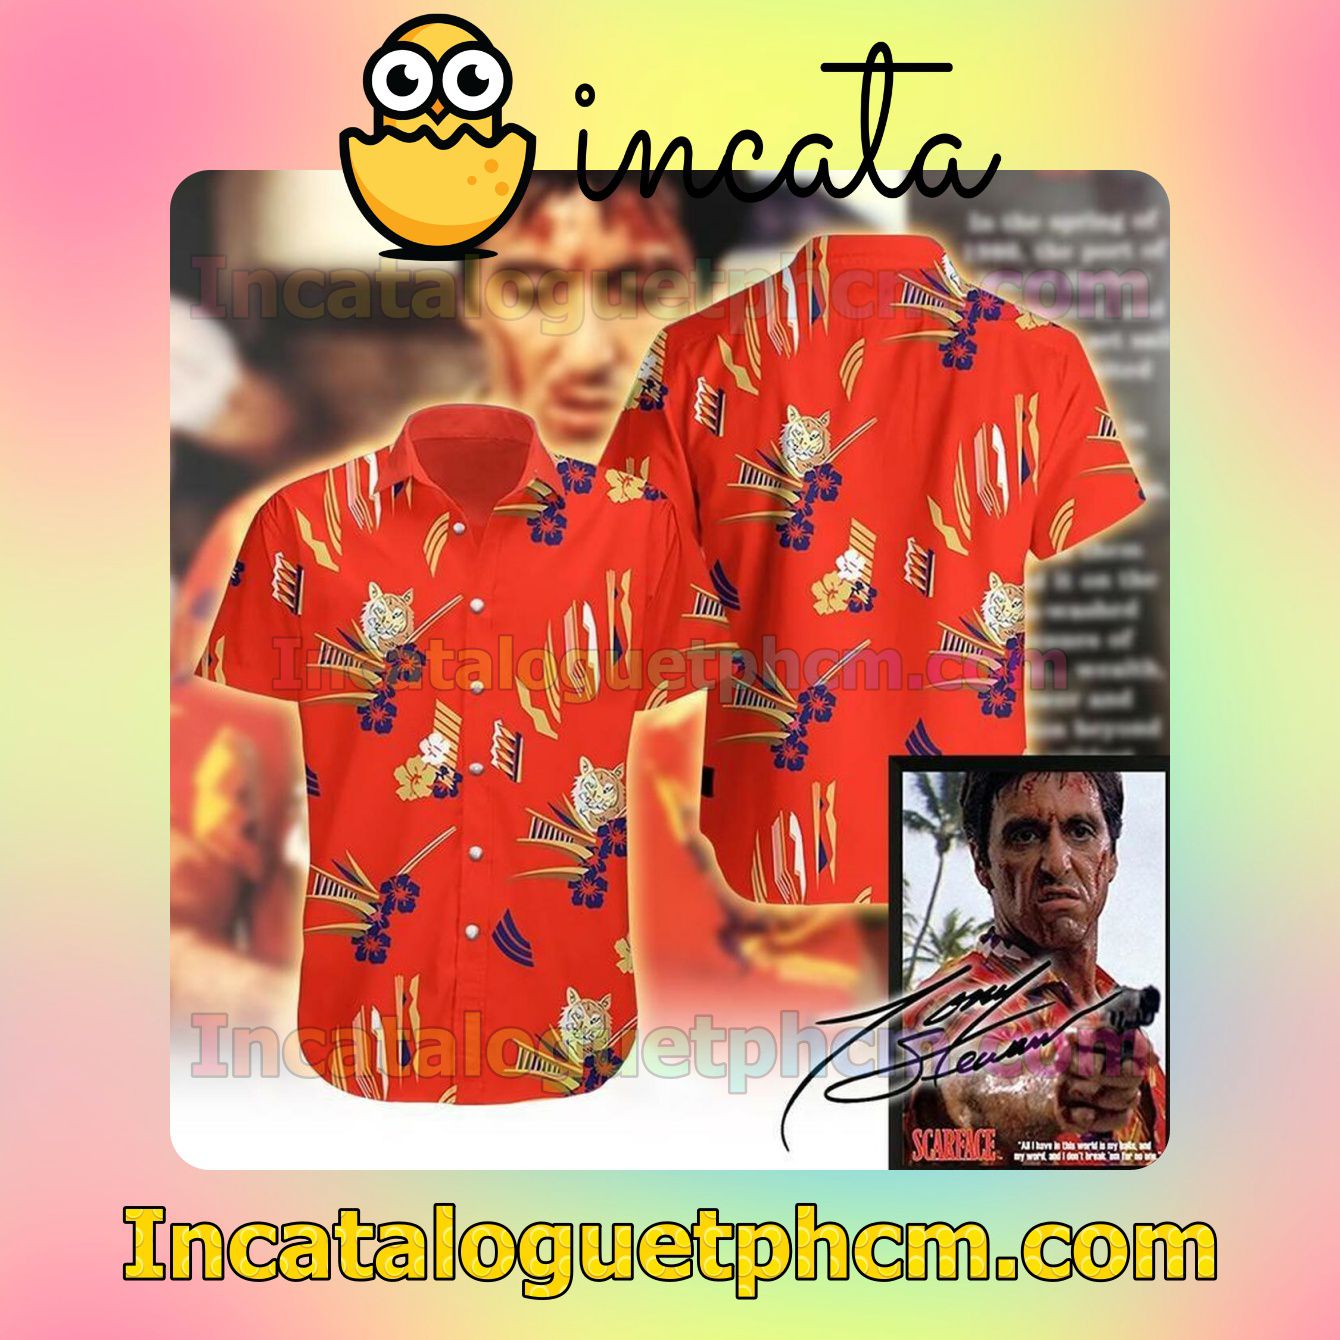 Tony Montana Al Pacino In Scarface Red Short Sleeve Shirt